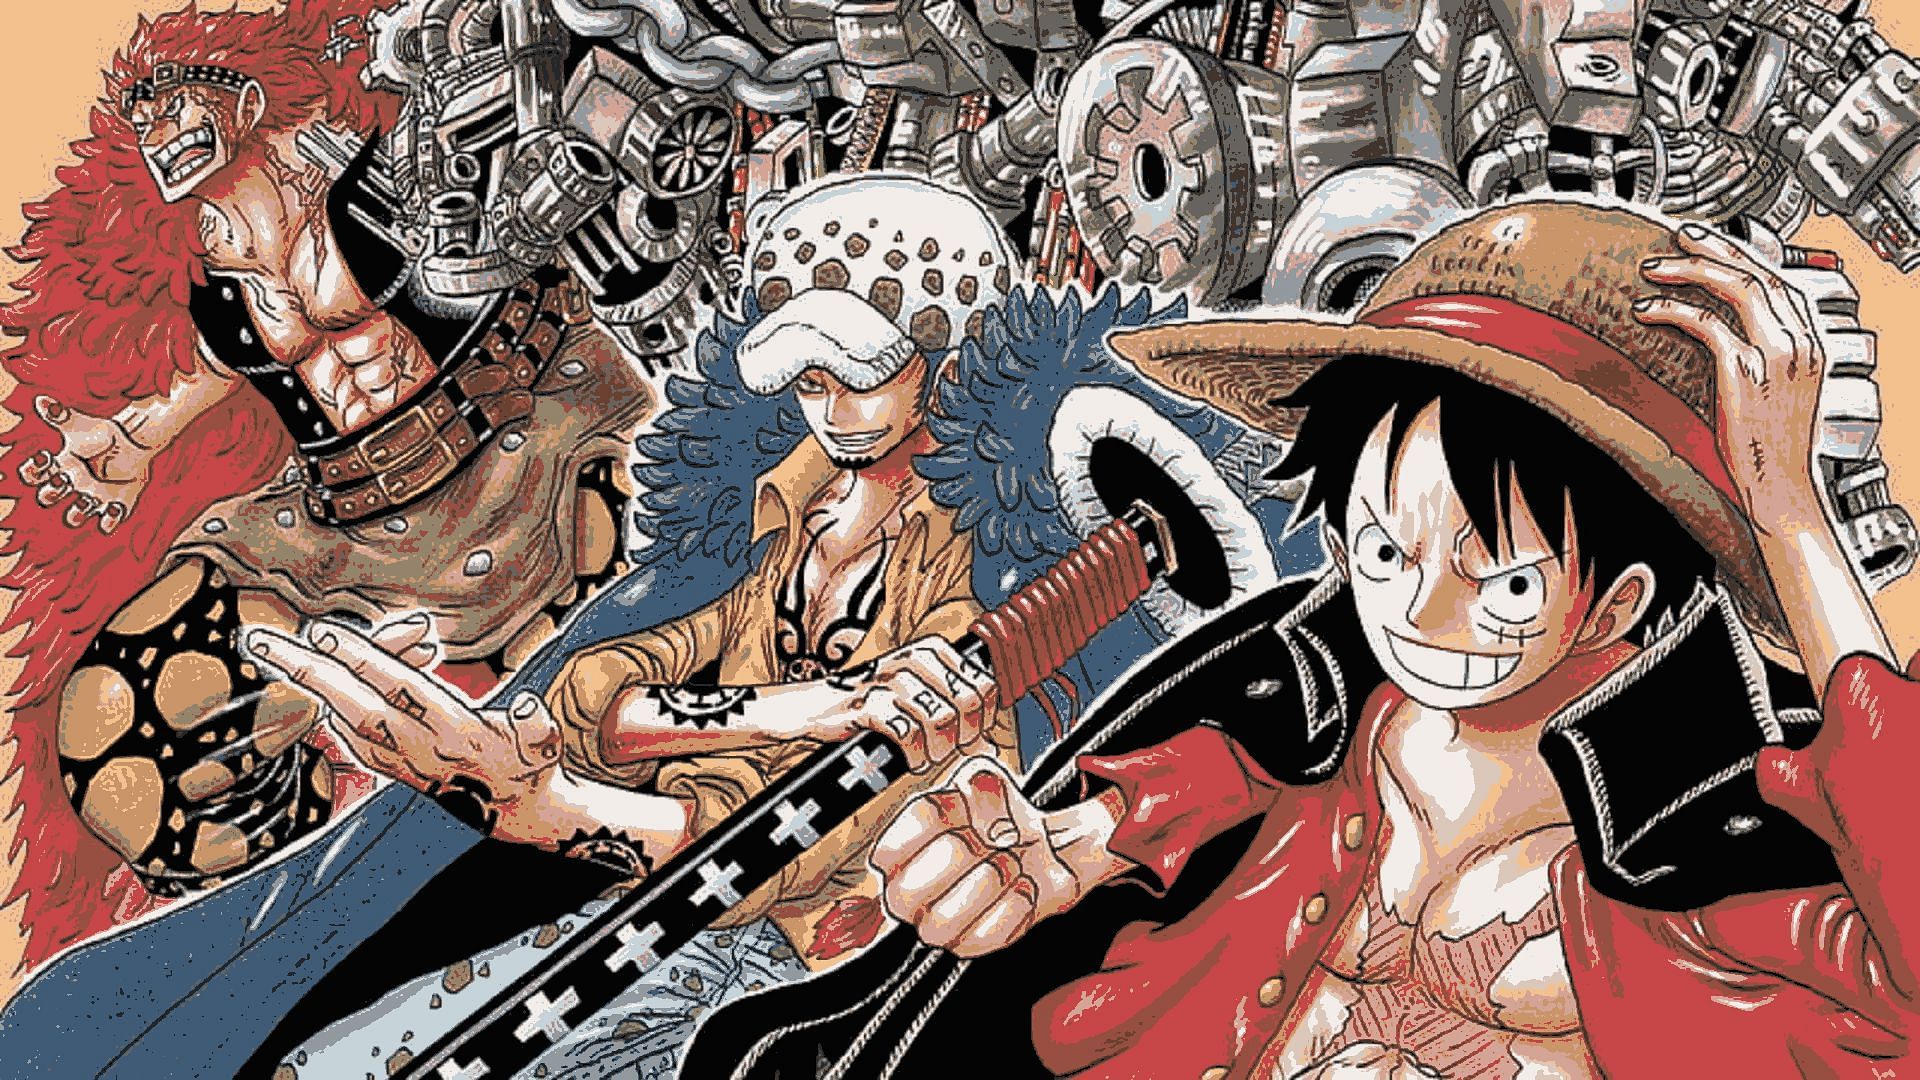 Episode 1017, One Piece Wiki